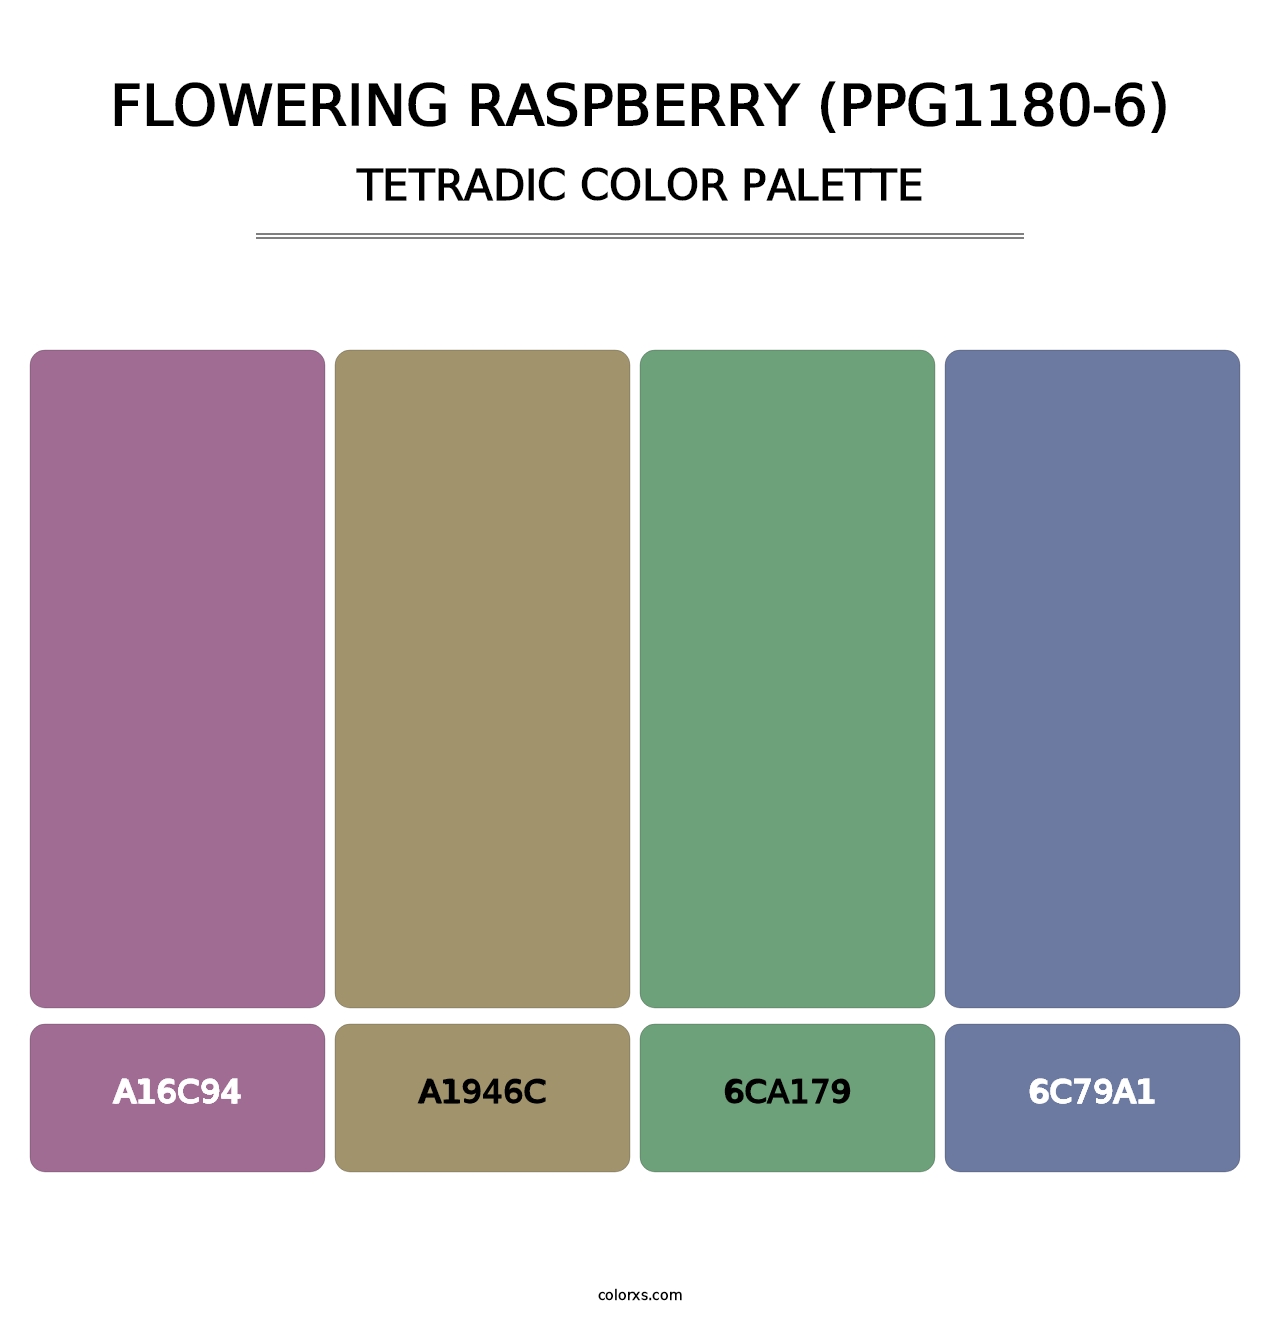 Flowering Raspberry (PPG1180-6) - Tetradic Color Palette